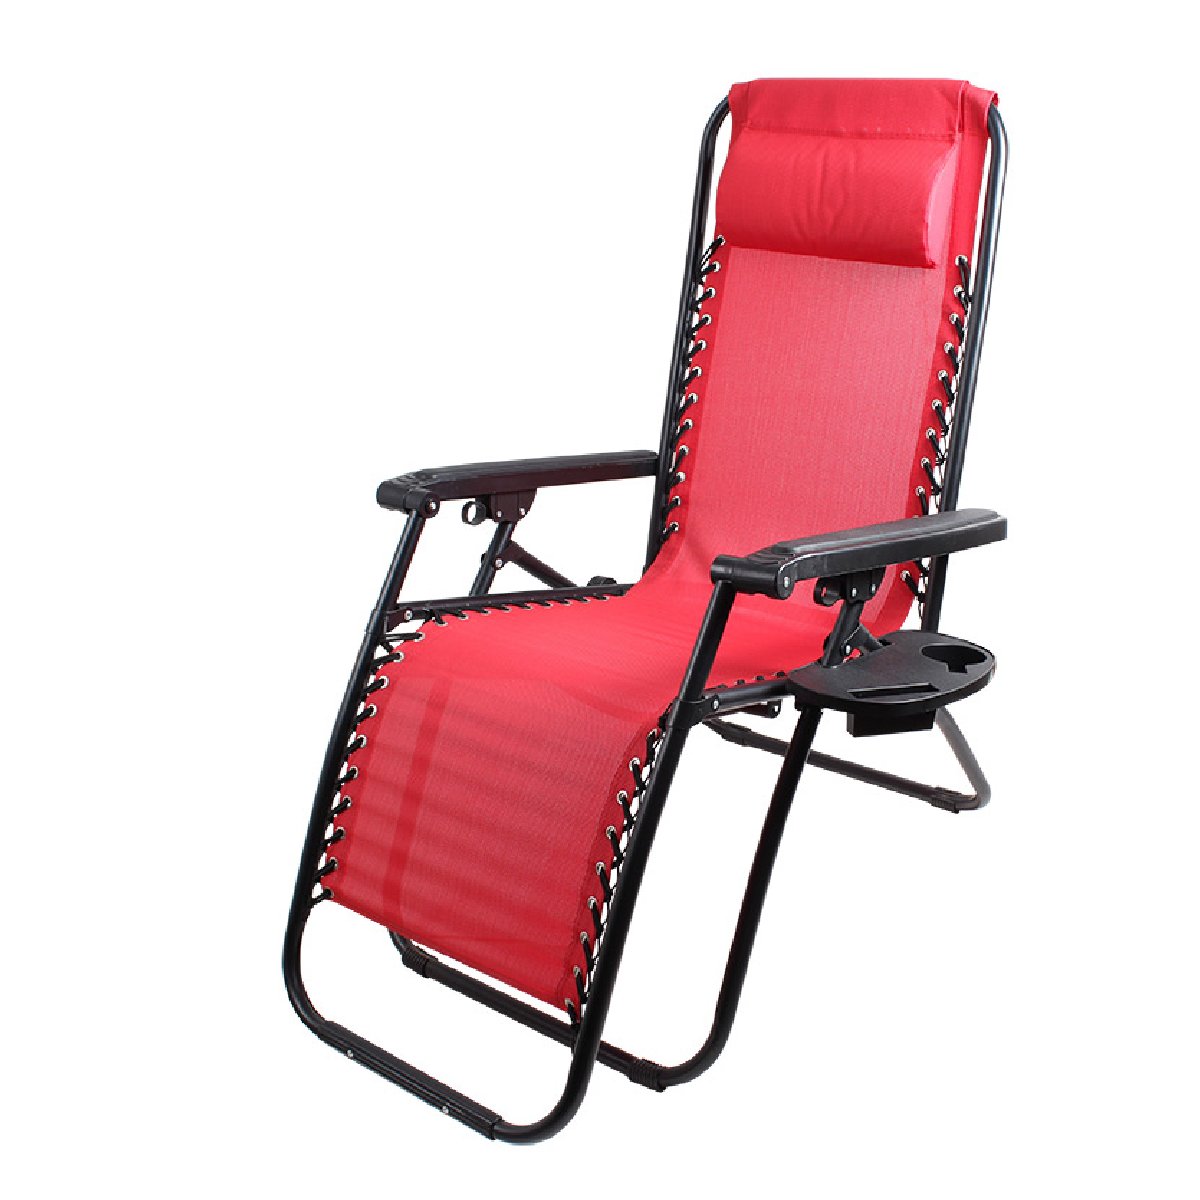 Кресло-шезлонг складное CHO-137-14 Люкс цв. красный (с подставкой) (993160)Купить